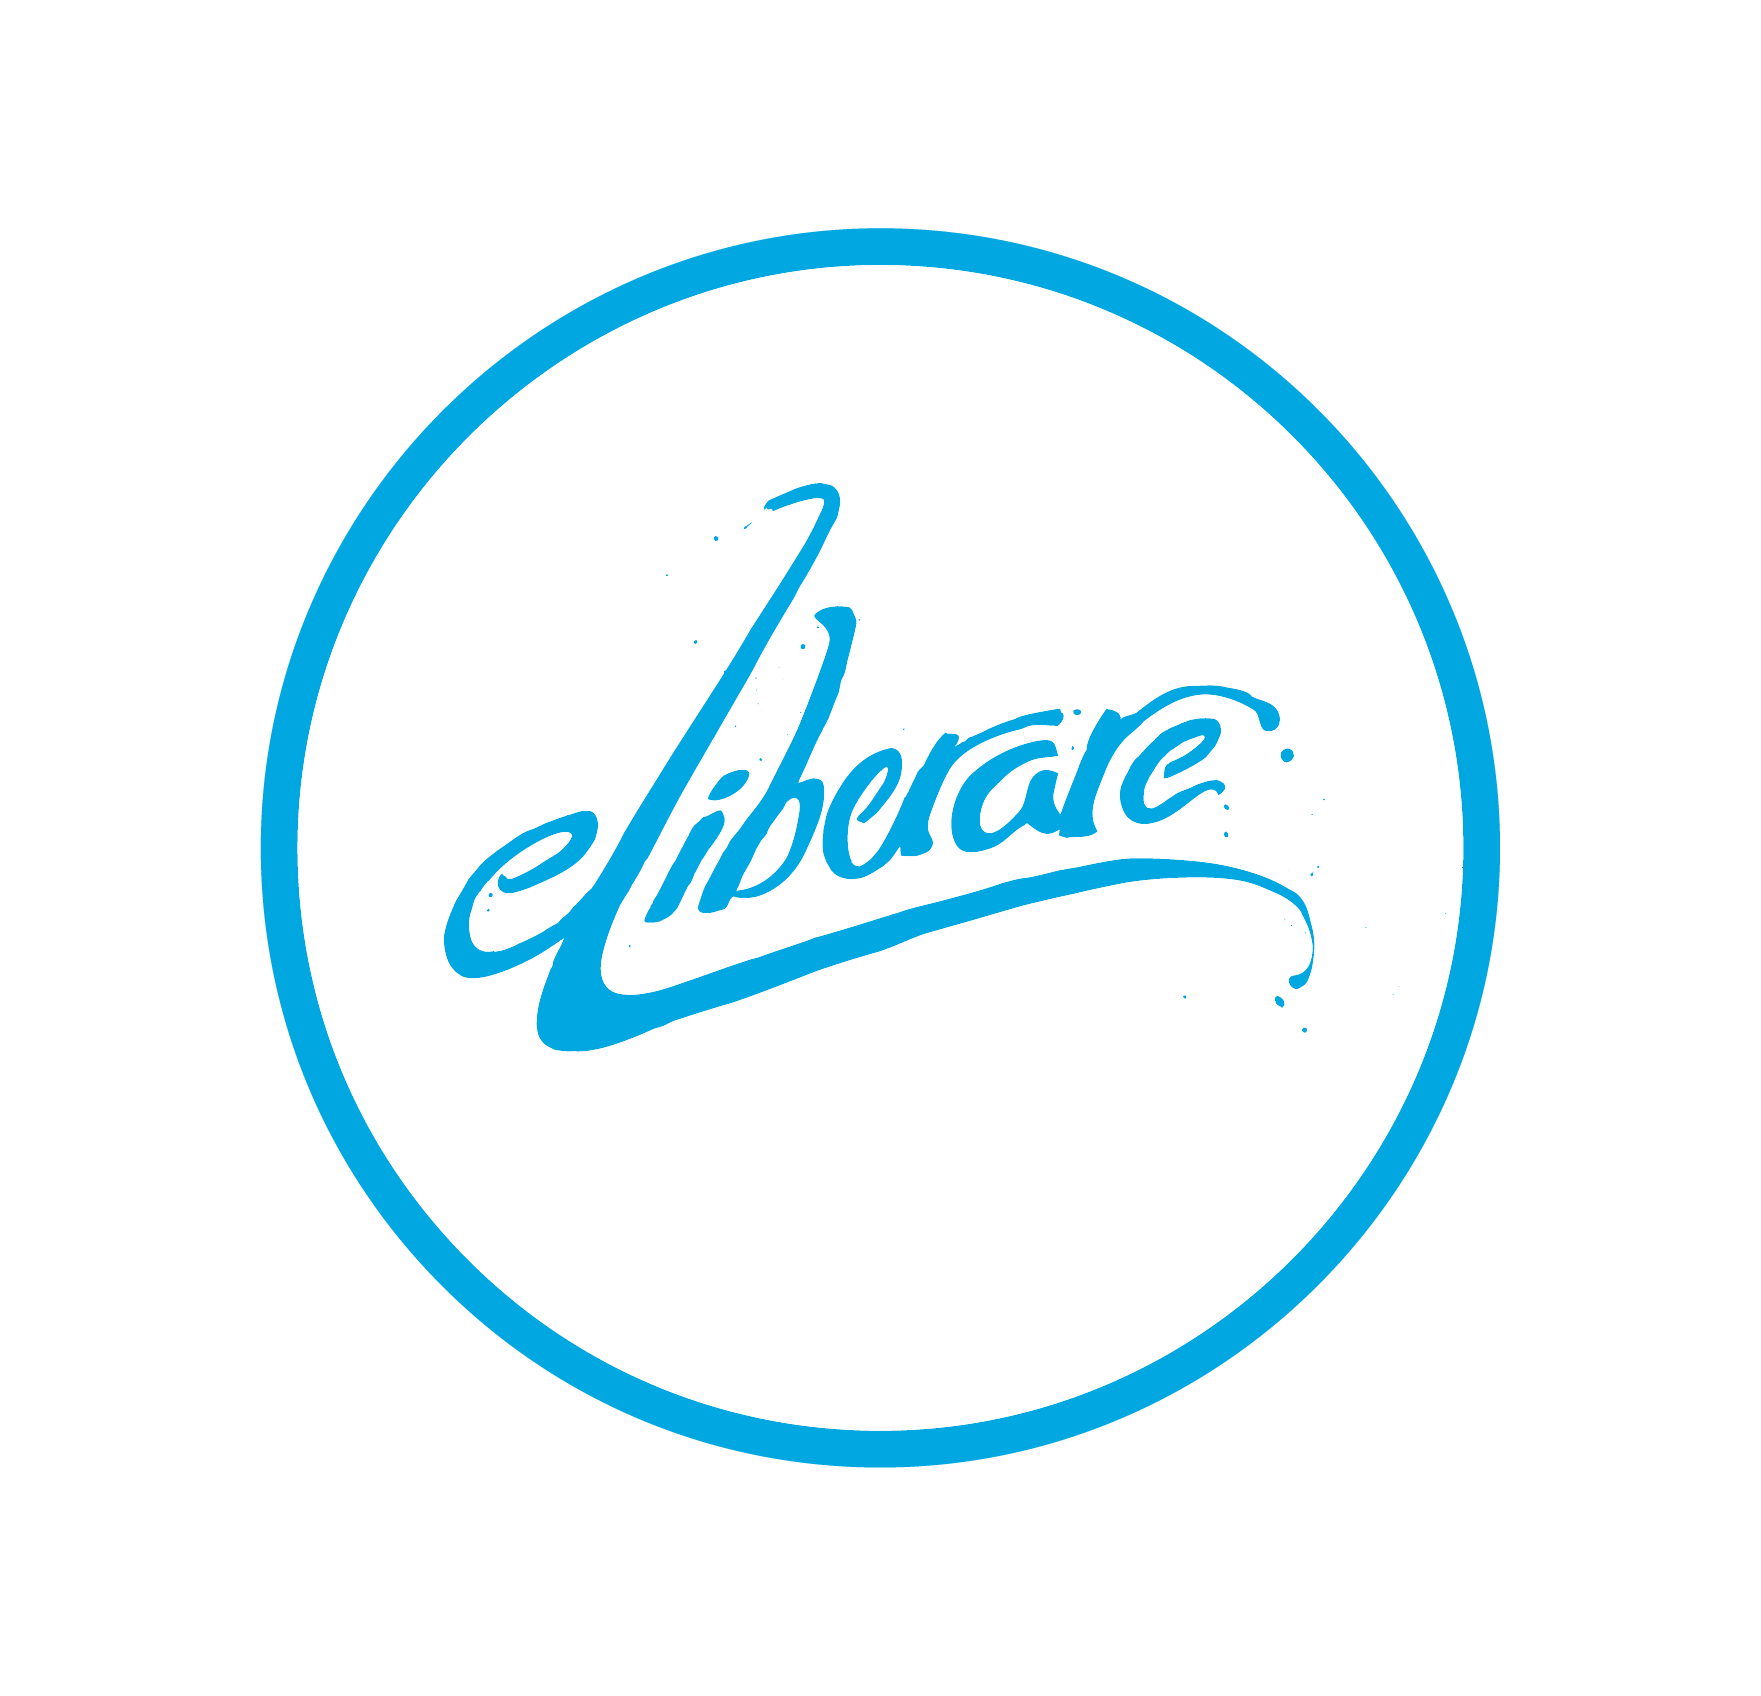 Asociația eLiberare logo